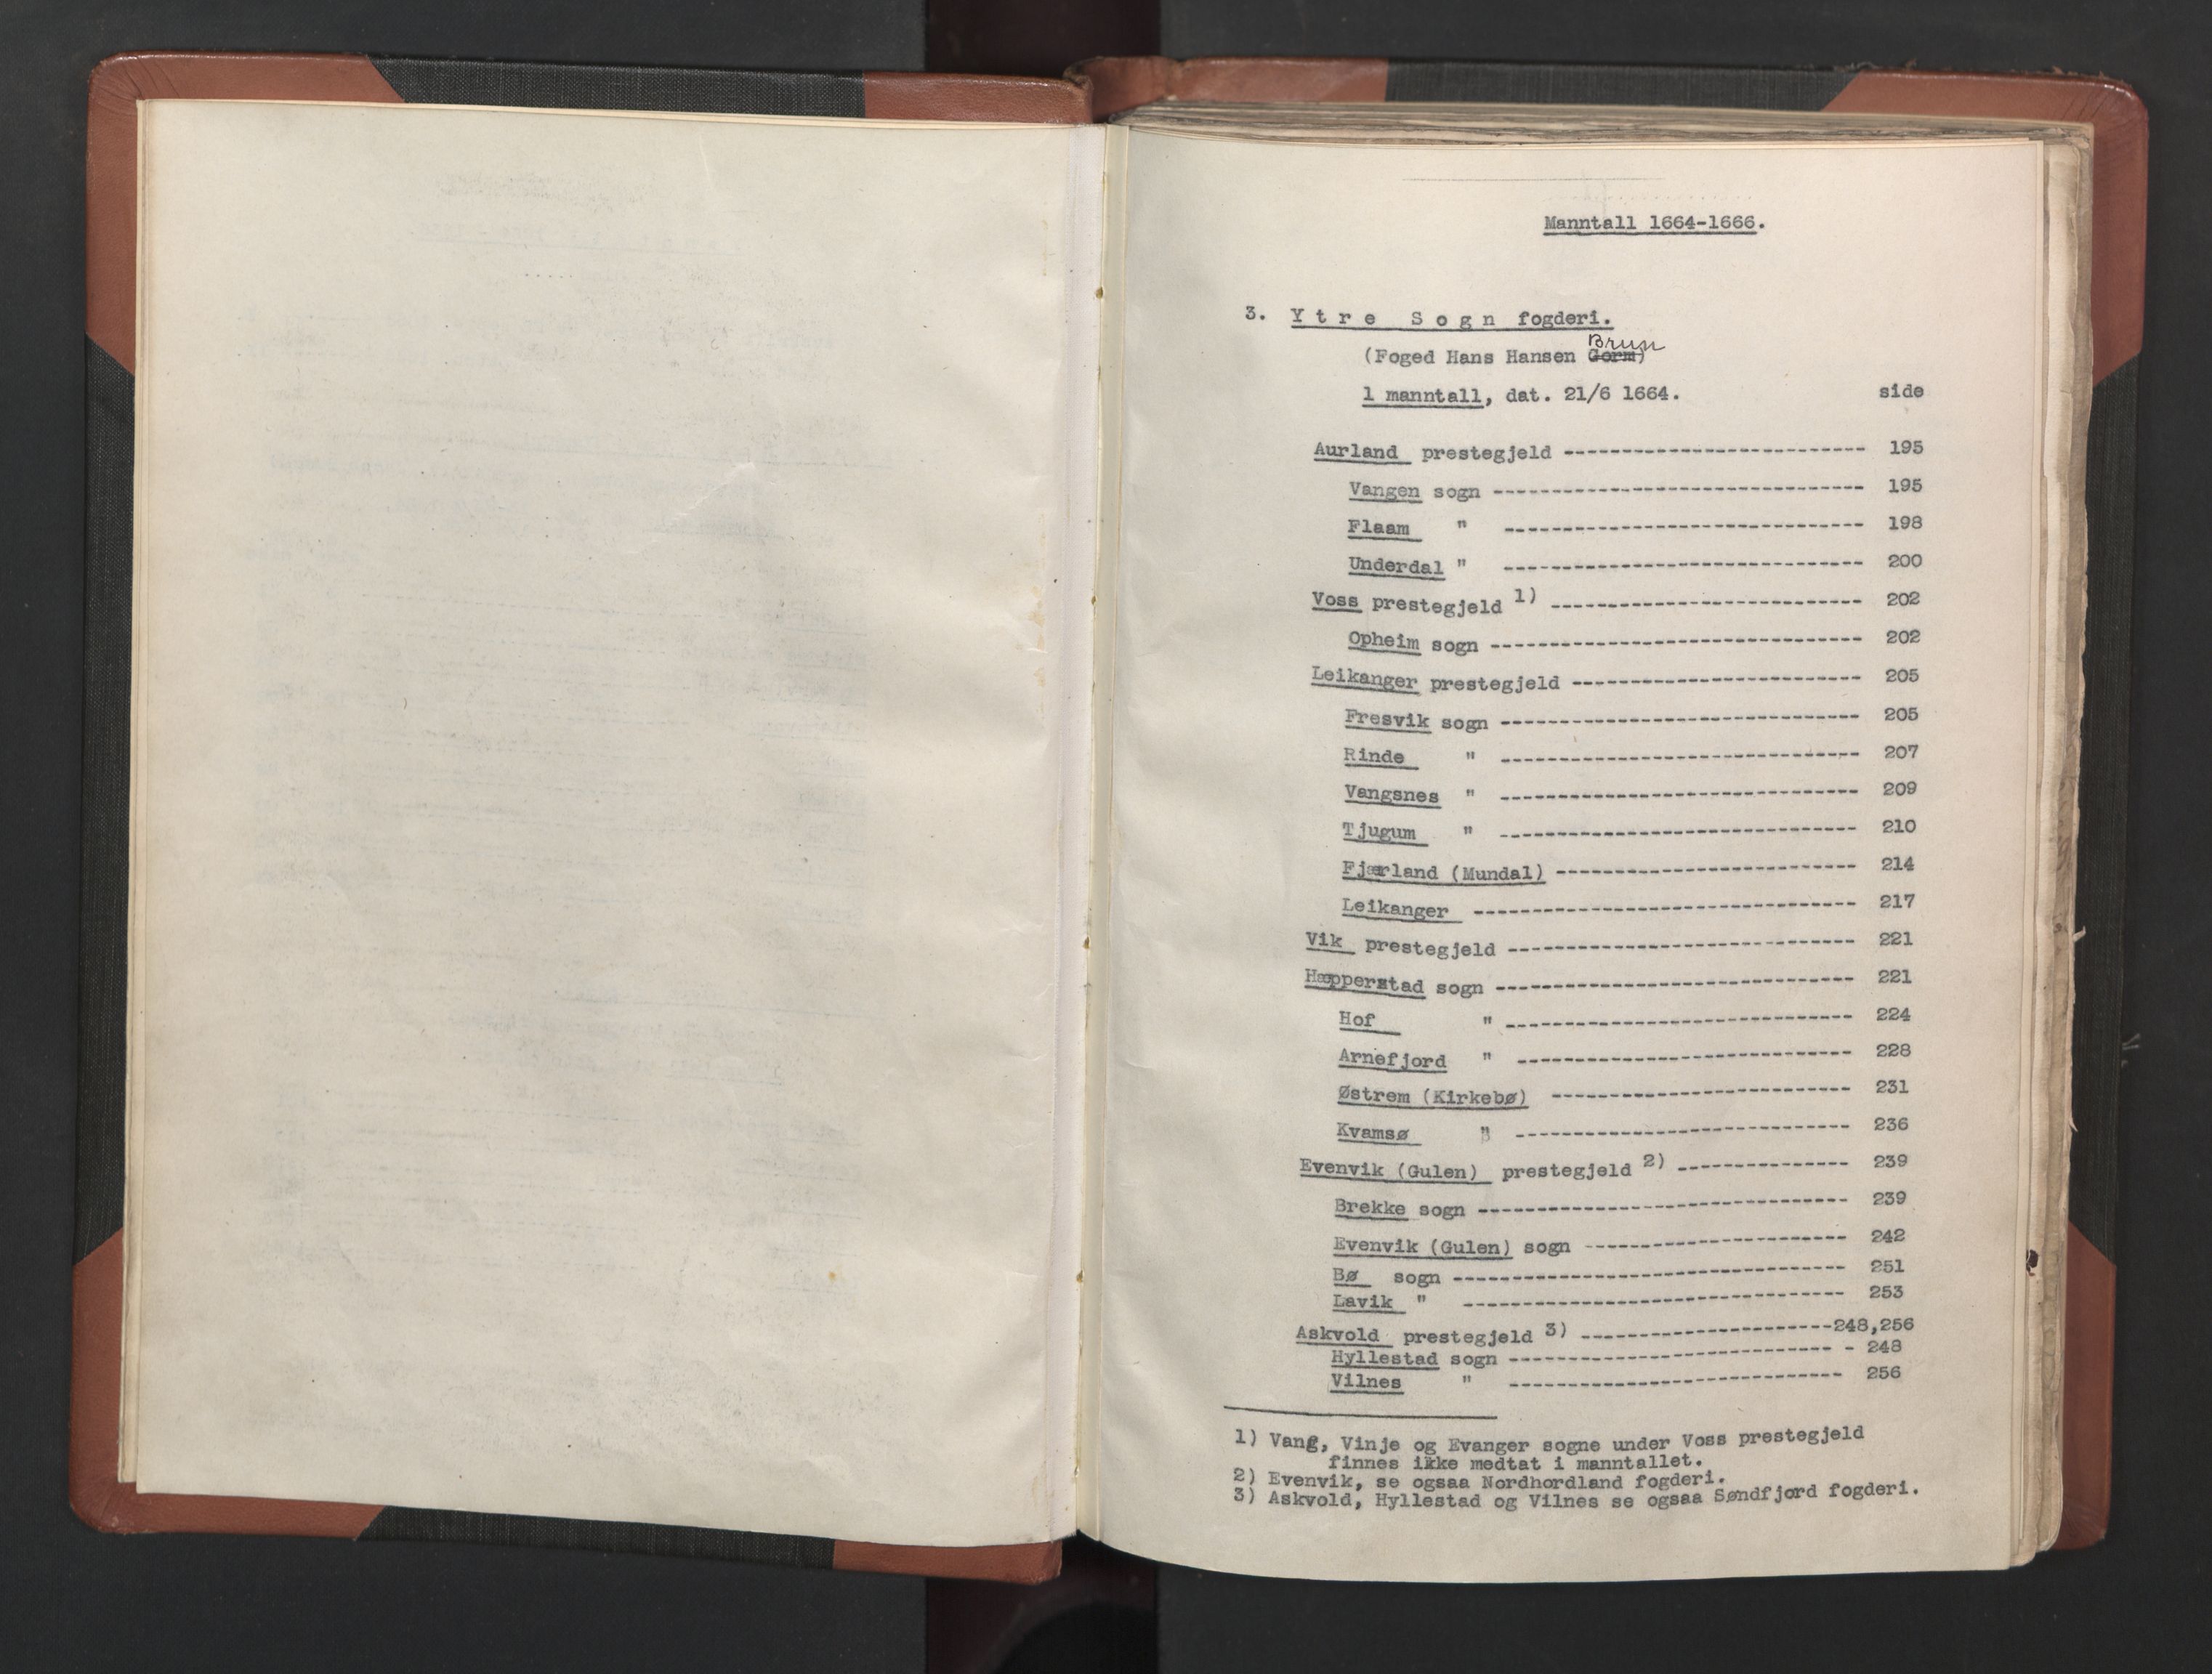 RA, Bailiff's Census 1664-1666, no. 14: Hardanger len, Ytre Sogn fogderi and Indre Sogn fogderi, 1664-1665